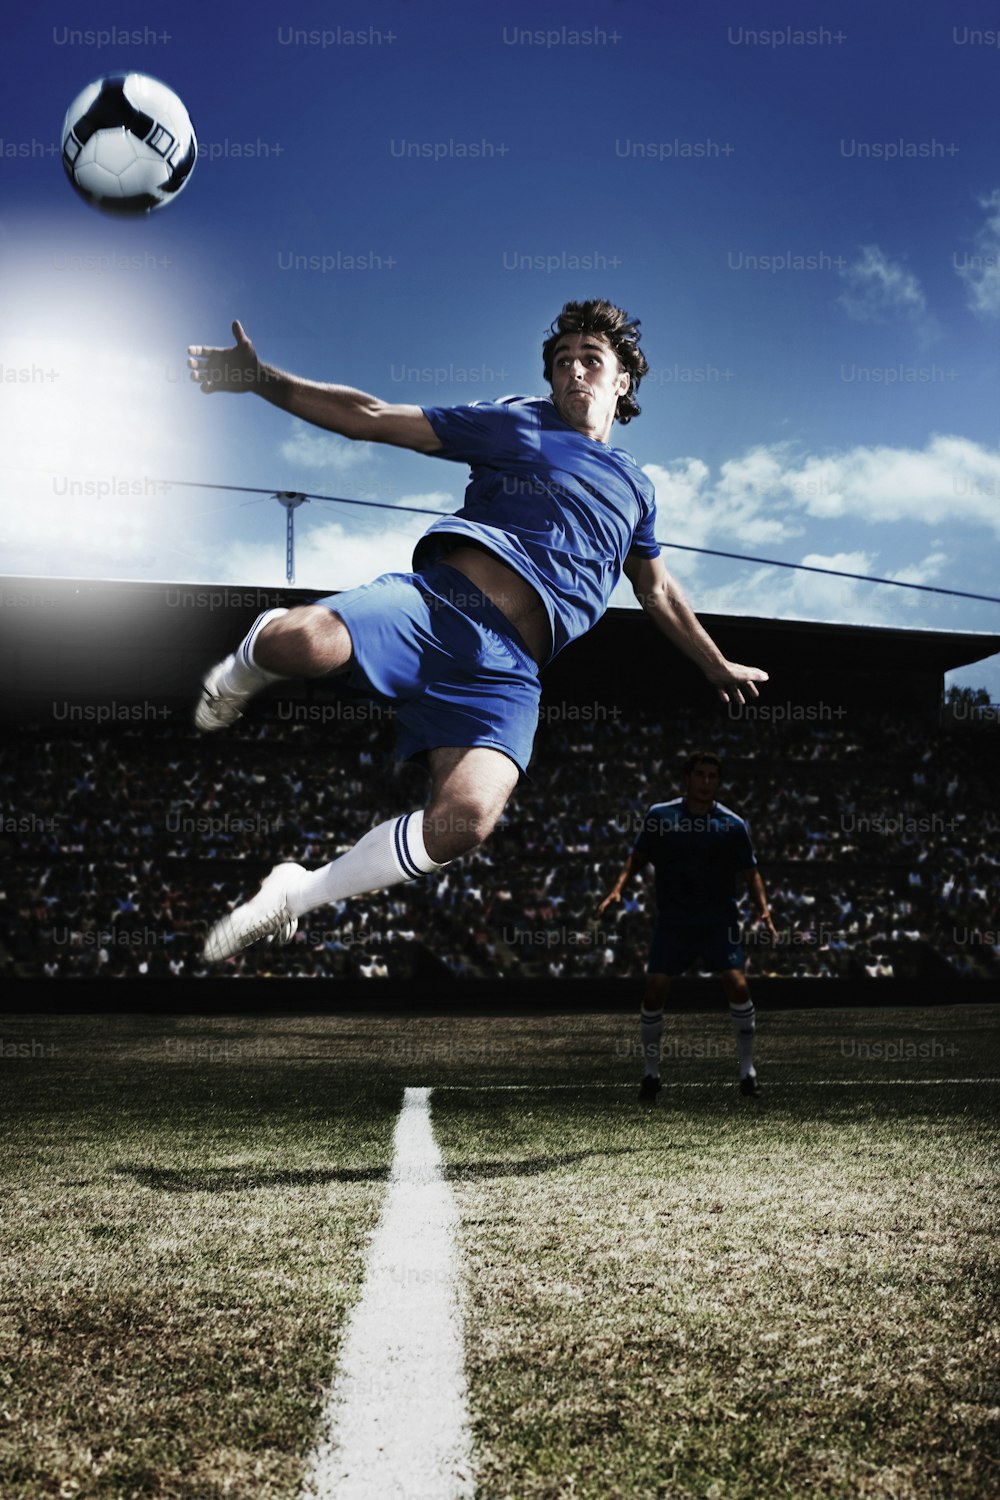 Un homme donnant un coup de pied dans un ballon de soccer au sommet d’un terrain